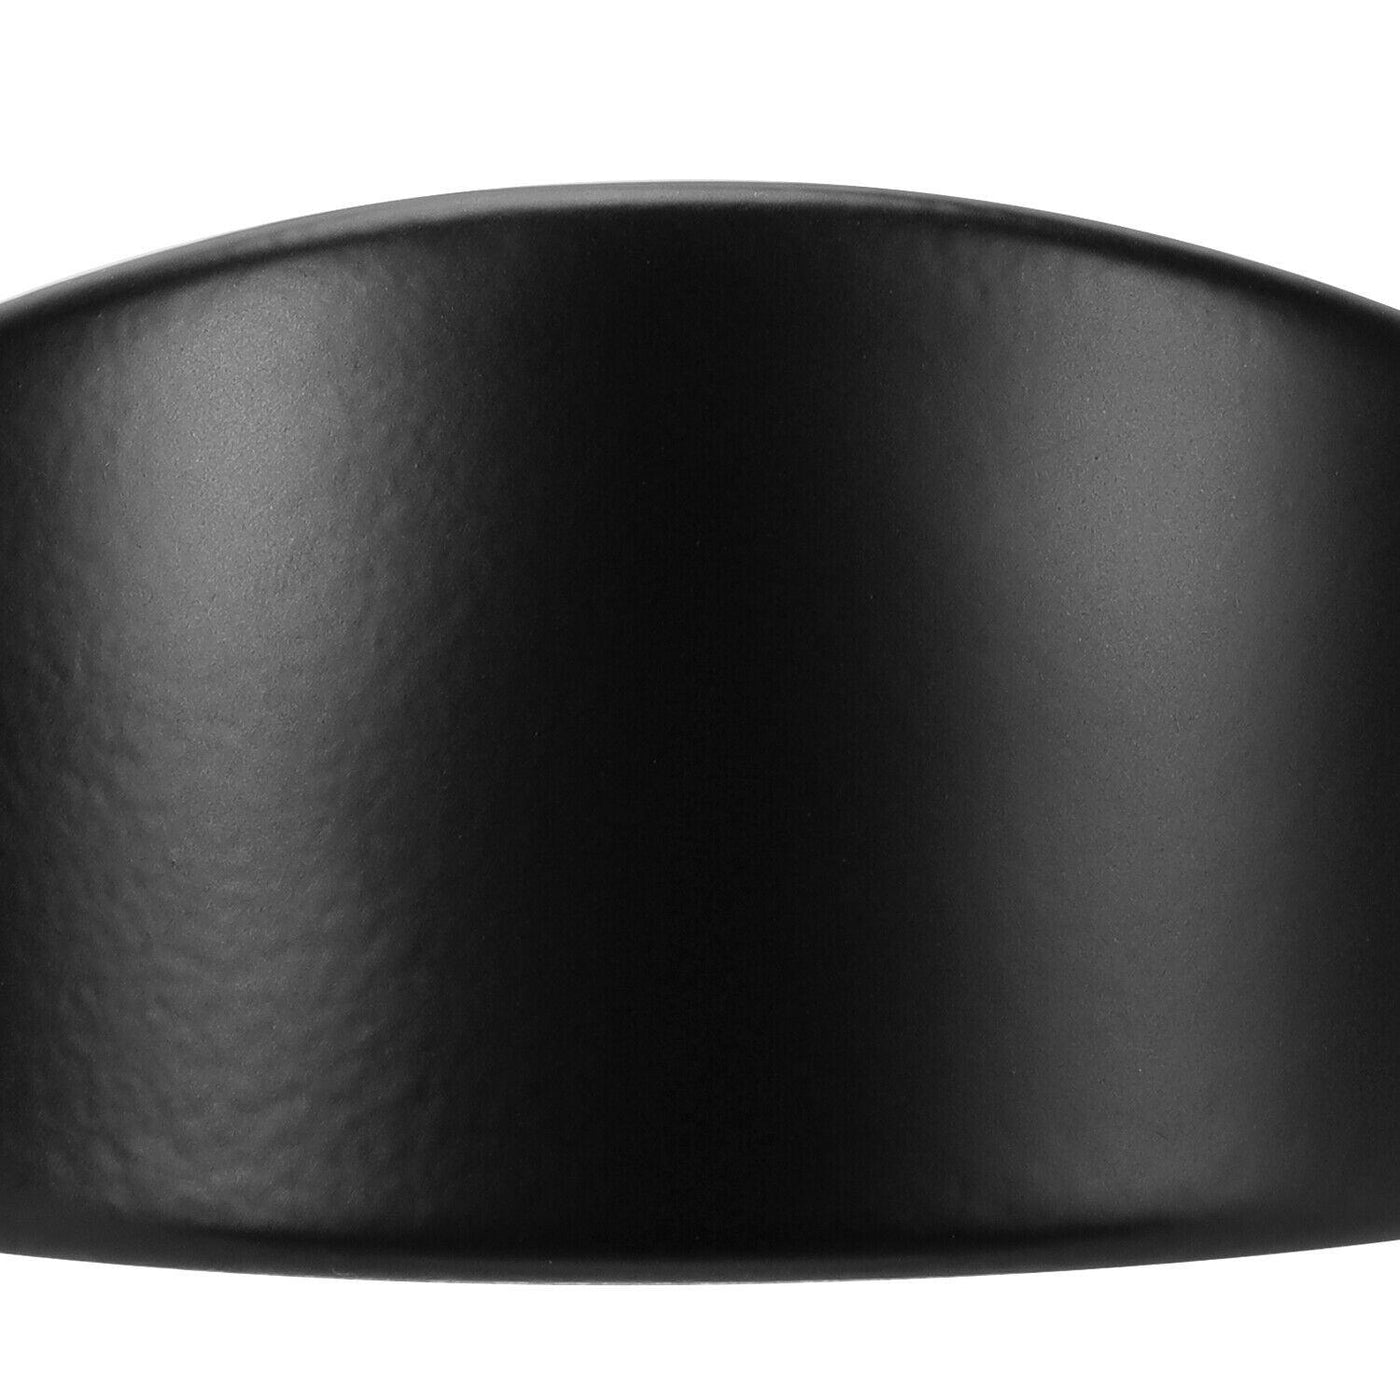 7" Headlight 4.5" Passing Fog Lights Lamp Trim Ring Bezel Visor Cover For Harley - Moto Life Products